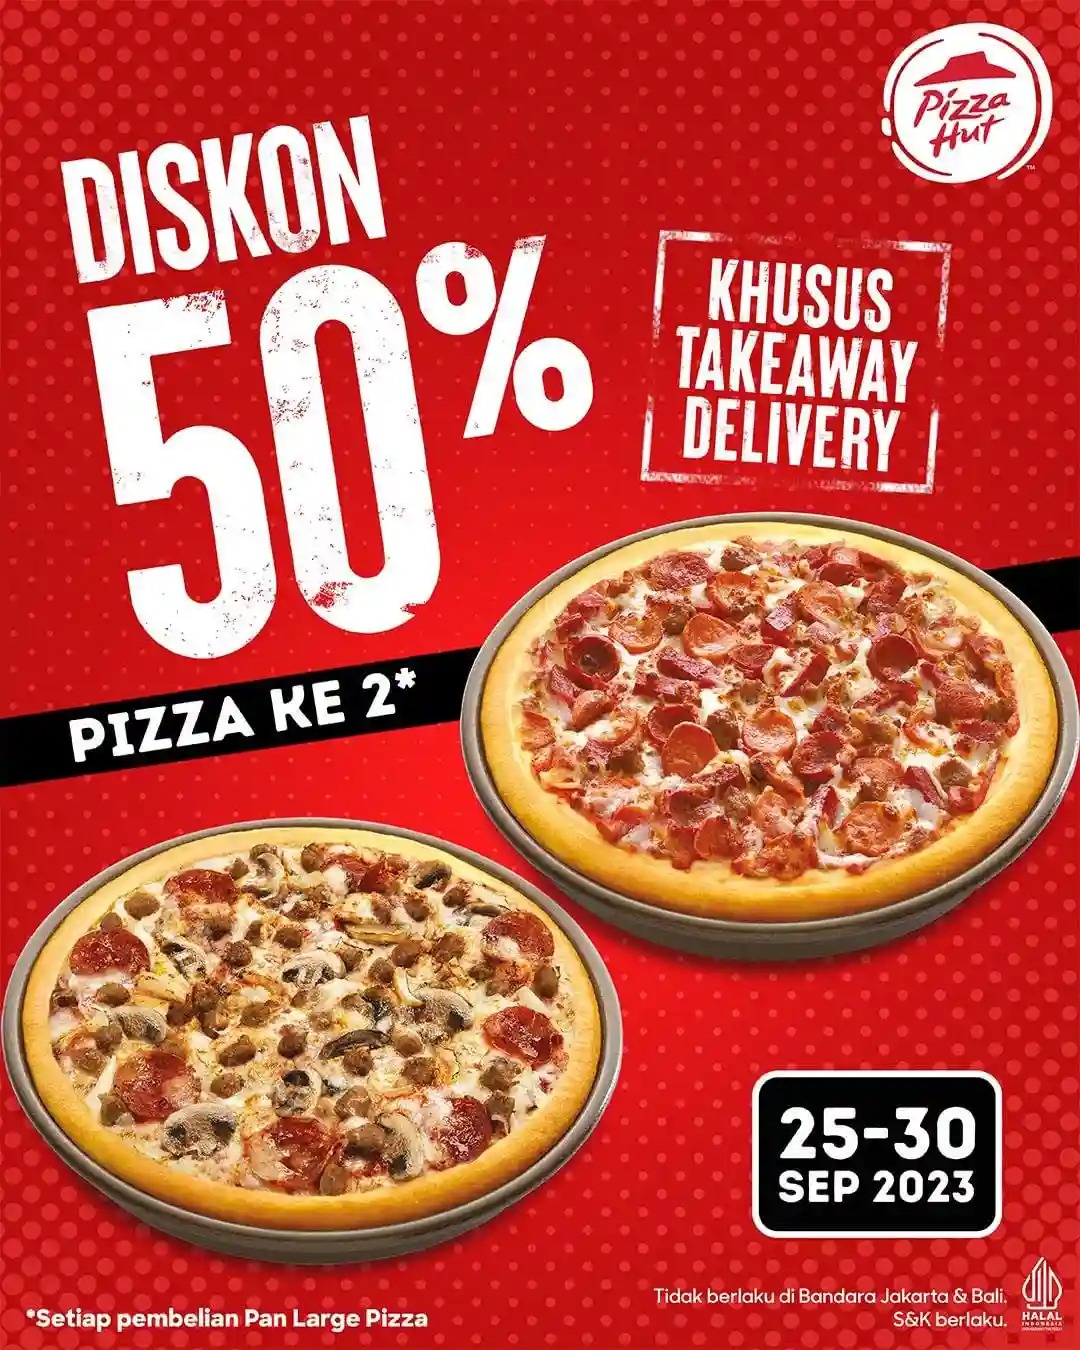 Cuma Sampai 30 September! Promo Diskon 50% di Pizza Hut, Khusus Take Away dan Delivery